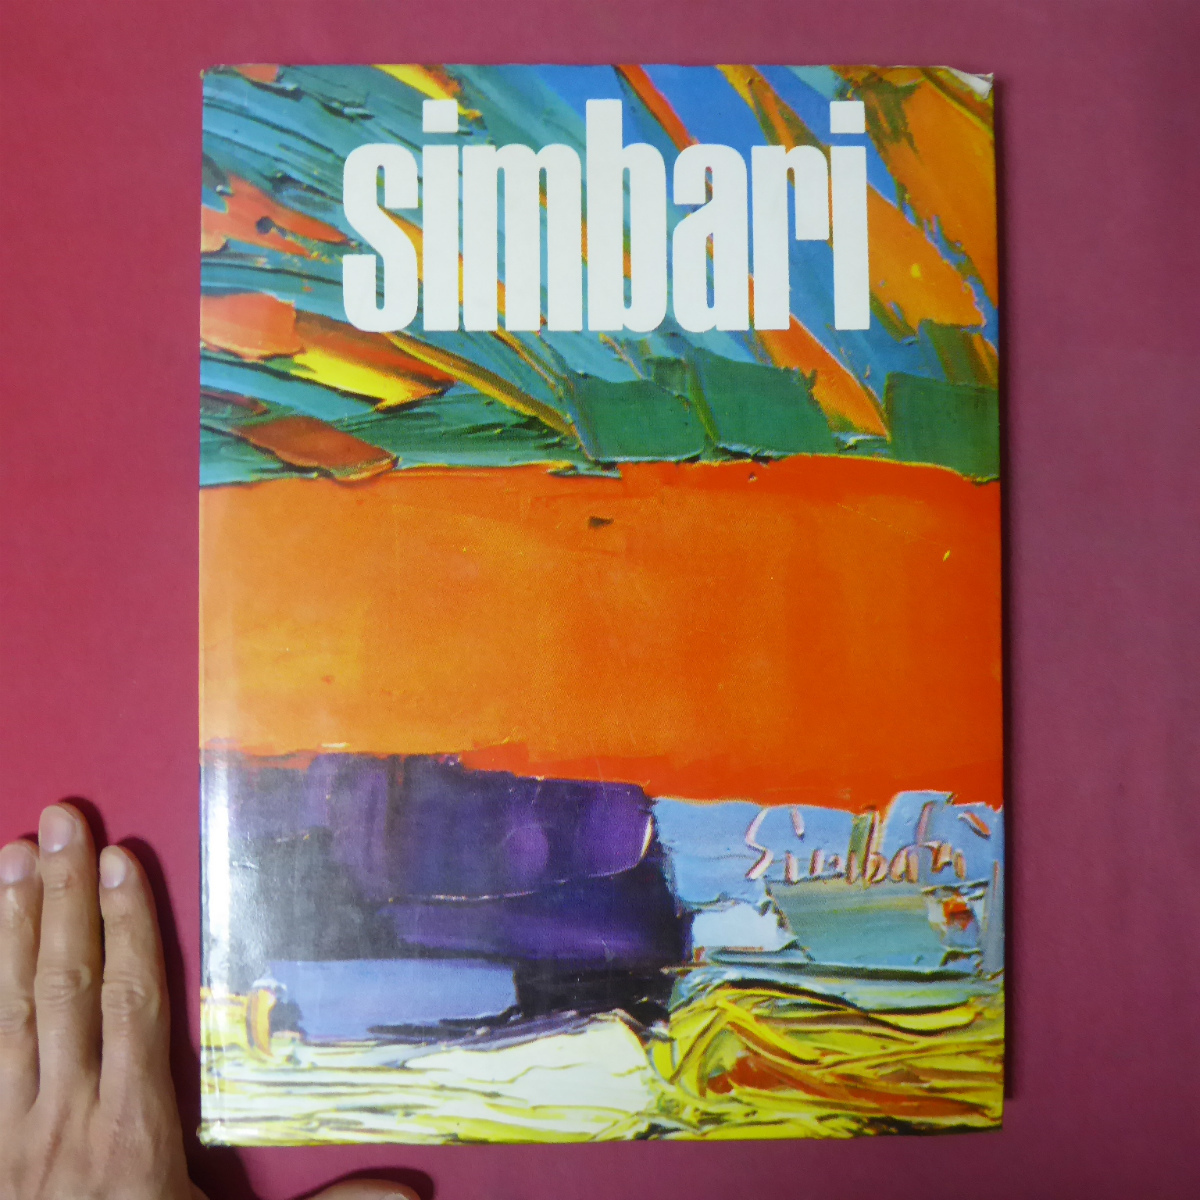 Large size/Foreign book [Nicola Simbari Art Collection/Nicola Simbari] @5, Painting, Art Book, Collection, Art Book